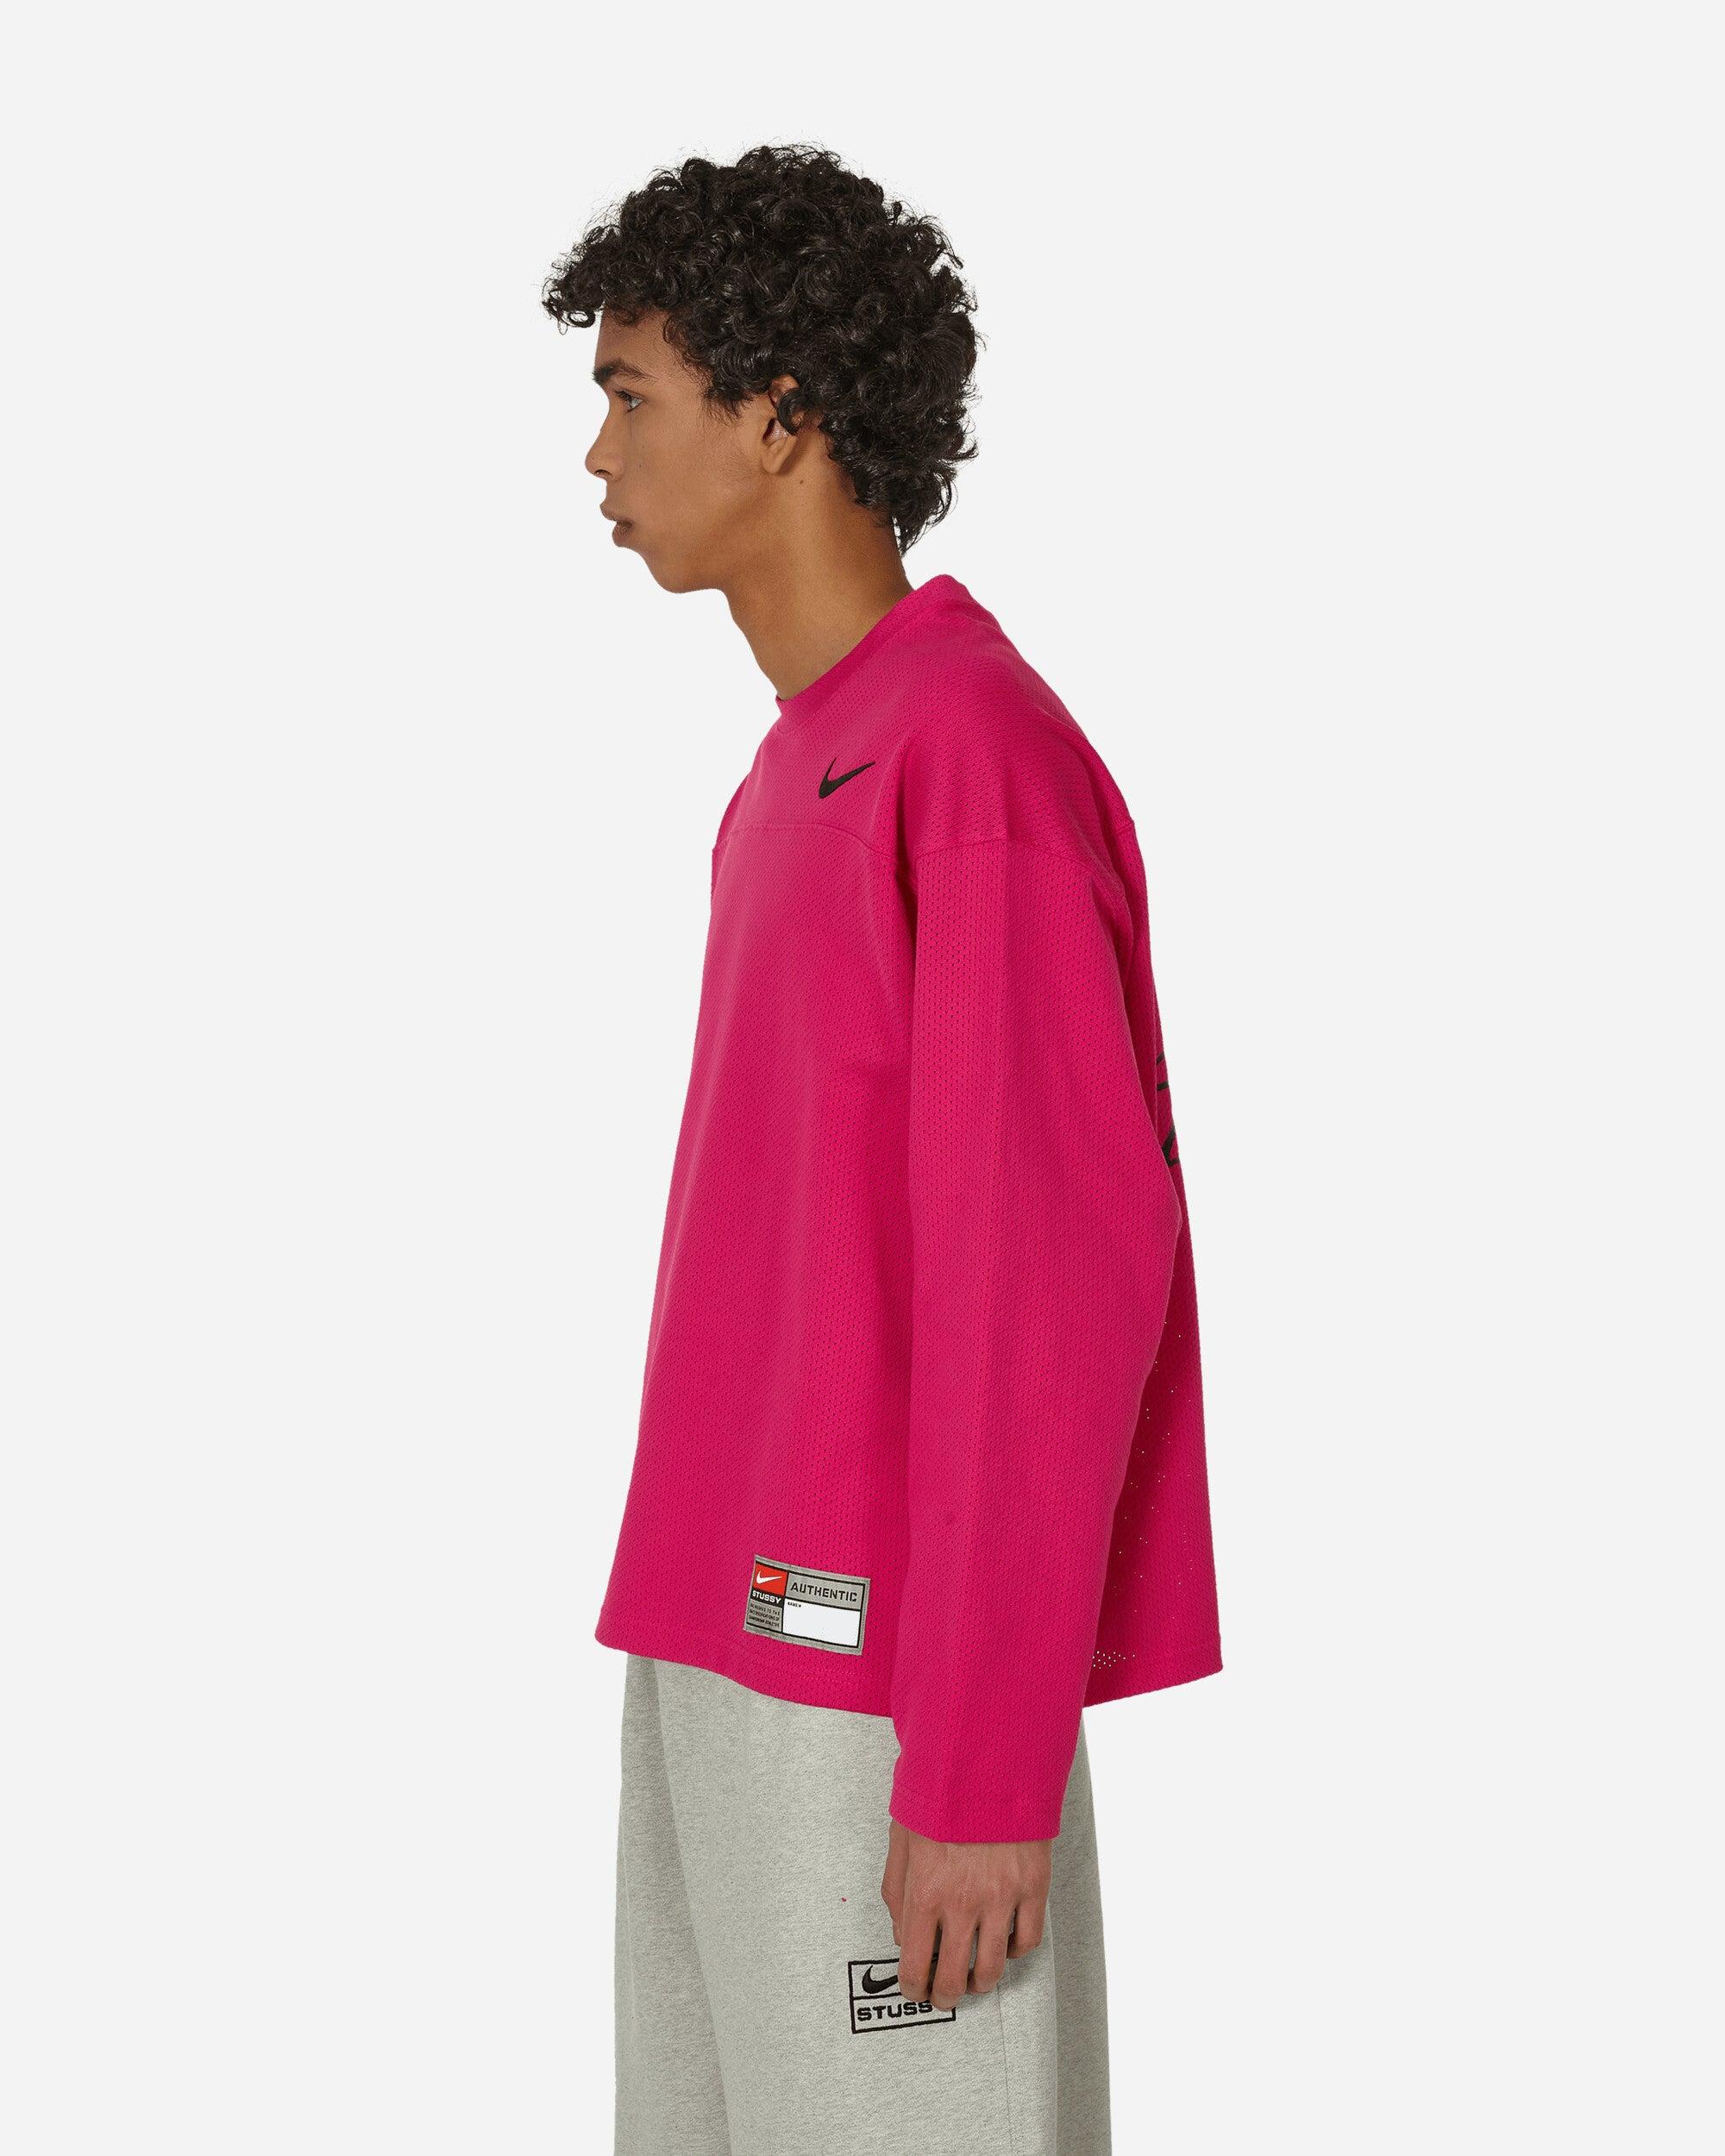 Nike Stüssy Longsleeve T-shirt Fireberry in Pink for Men | Lyst